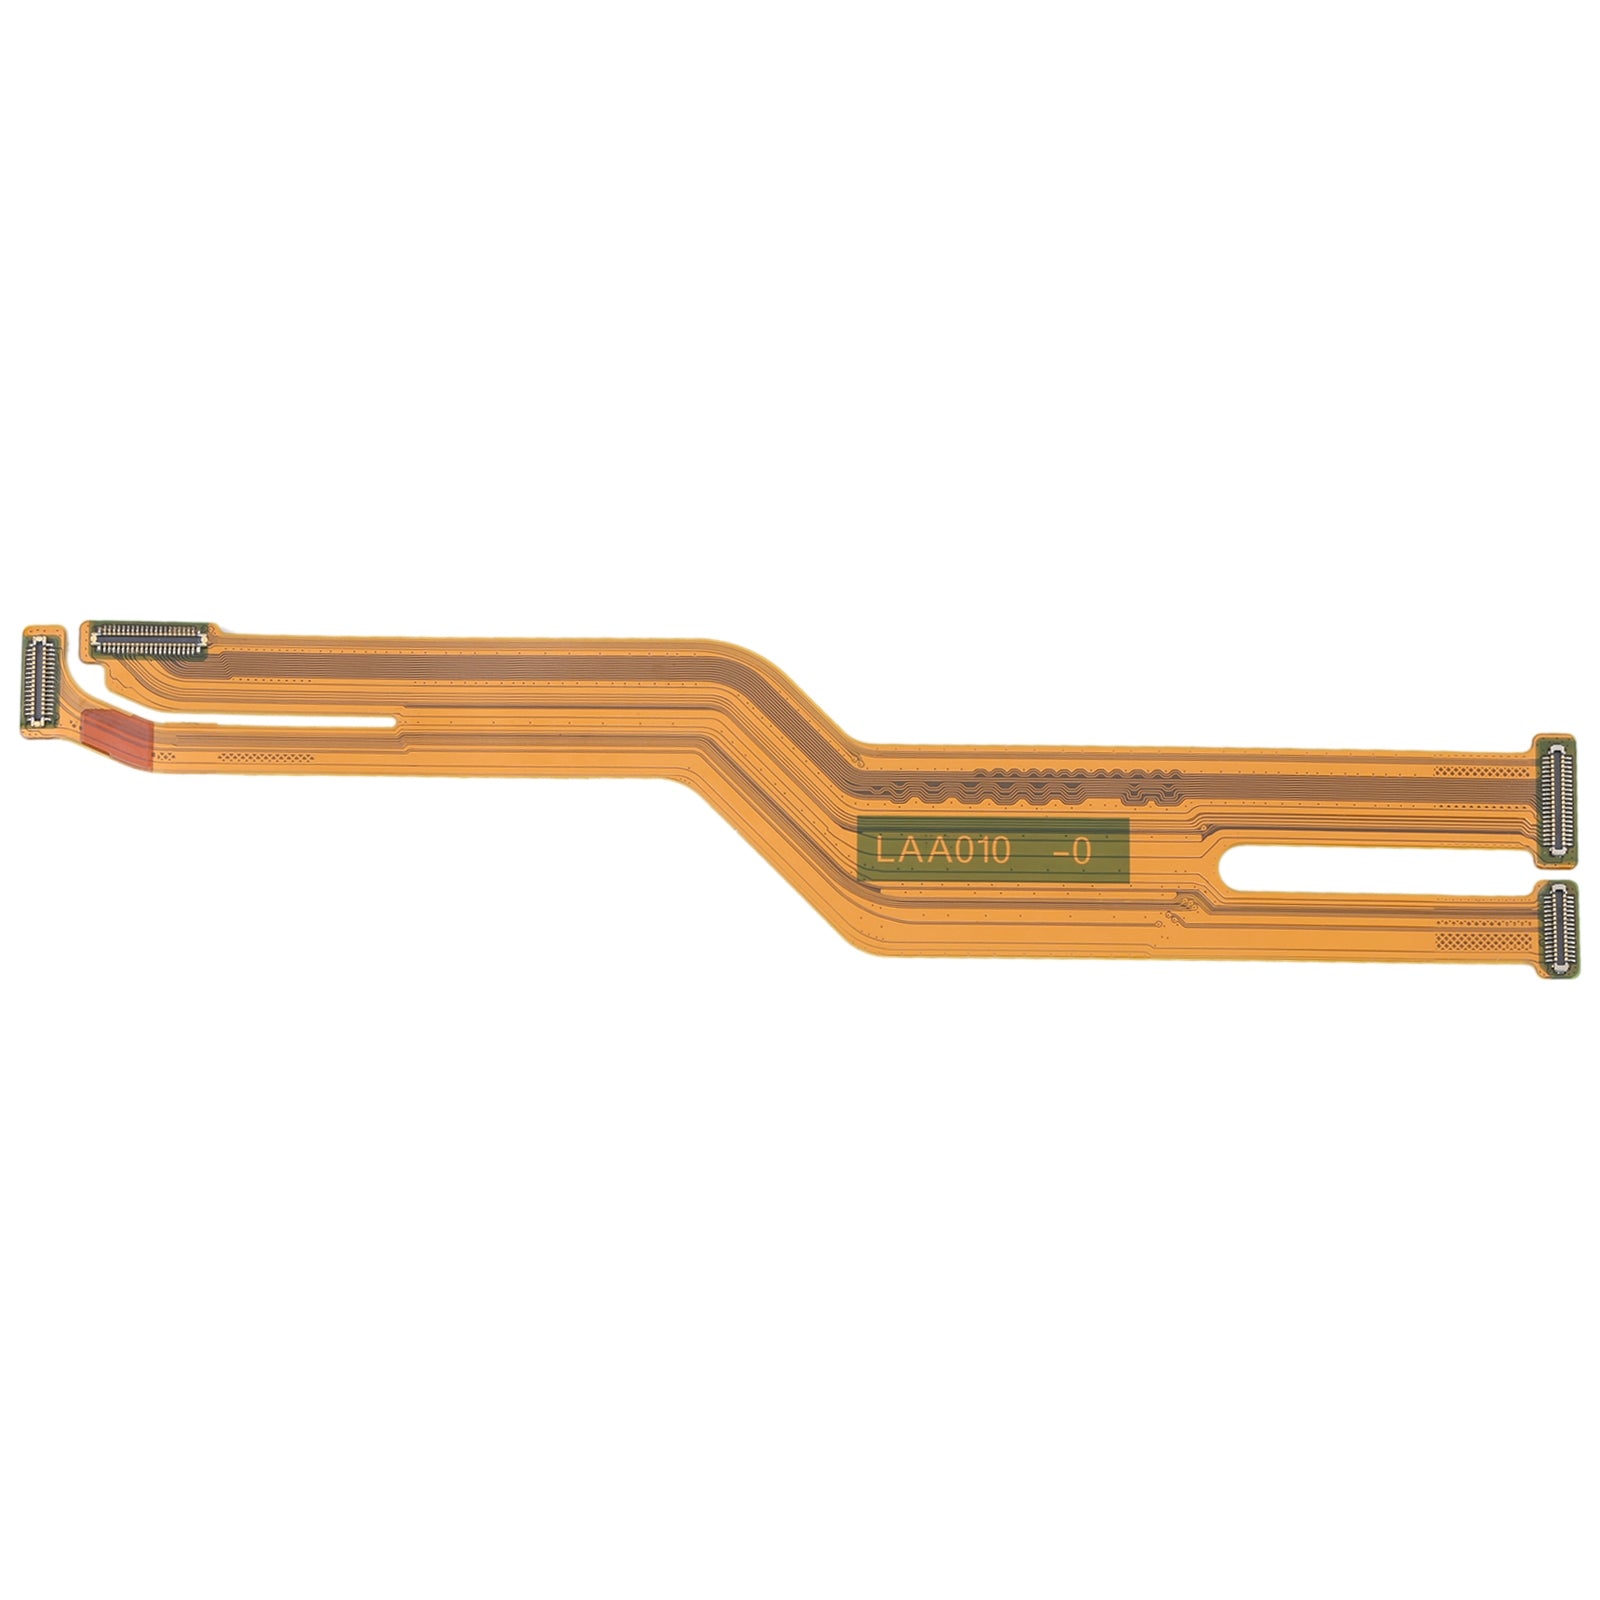 Oppo Reno6 Pro Board Connector Flex Cable